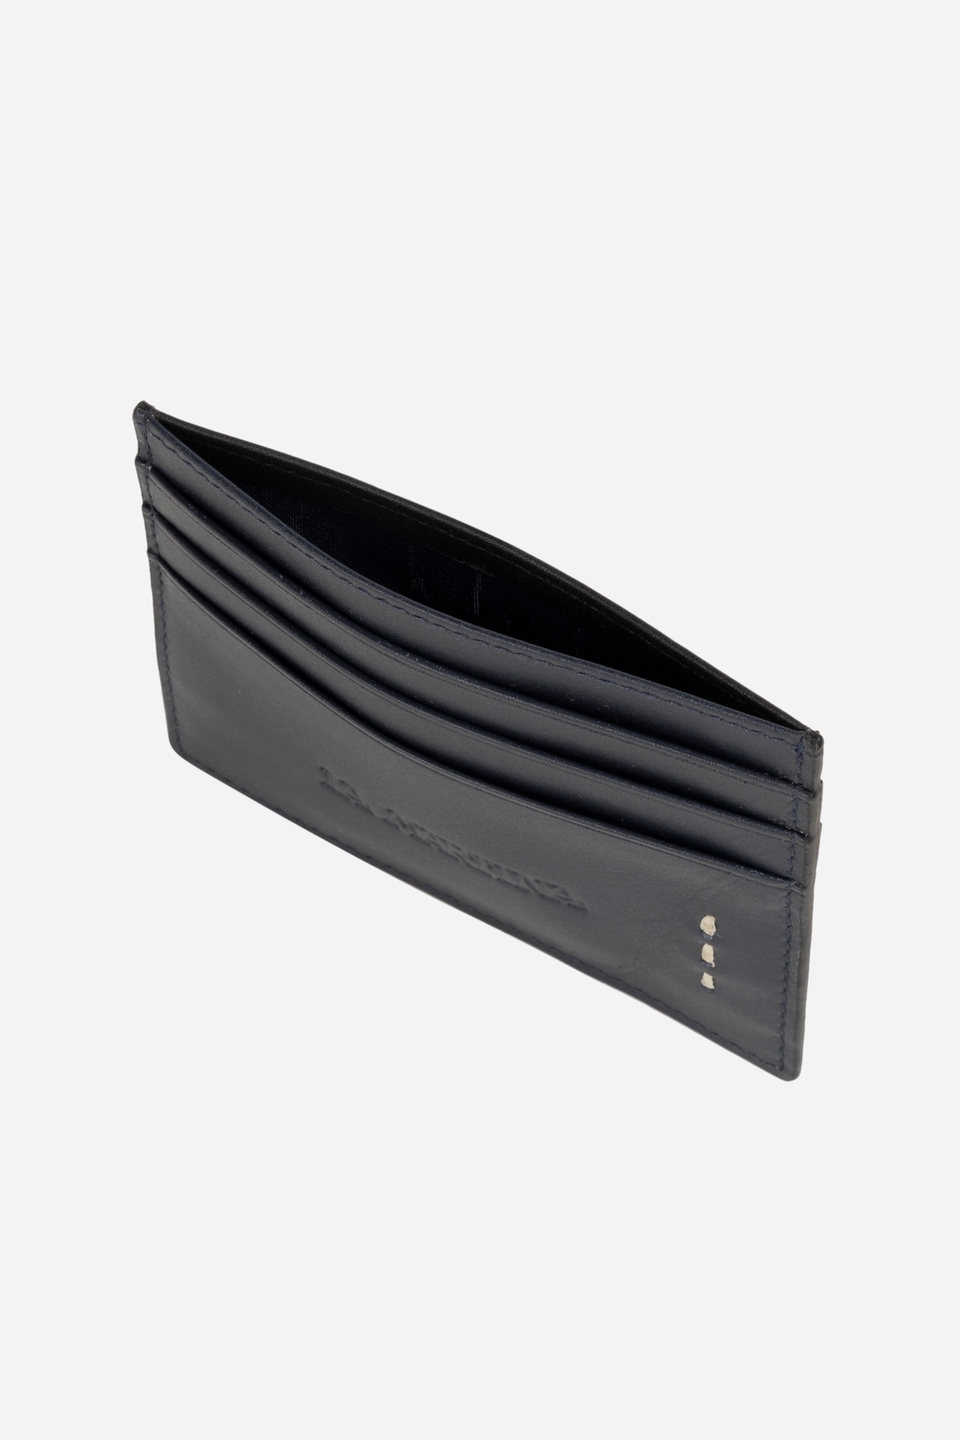 Men's leather wallet | La Martina - Official Online Shop